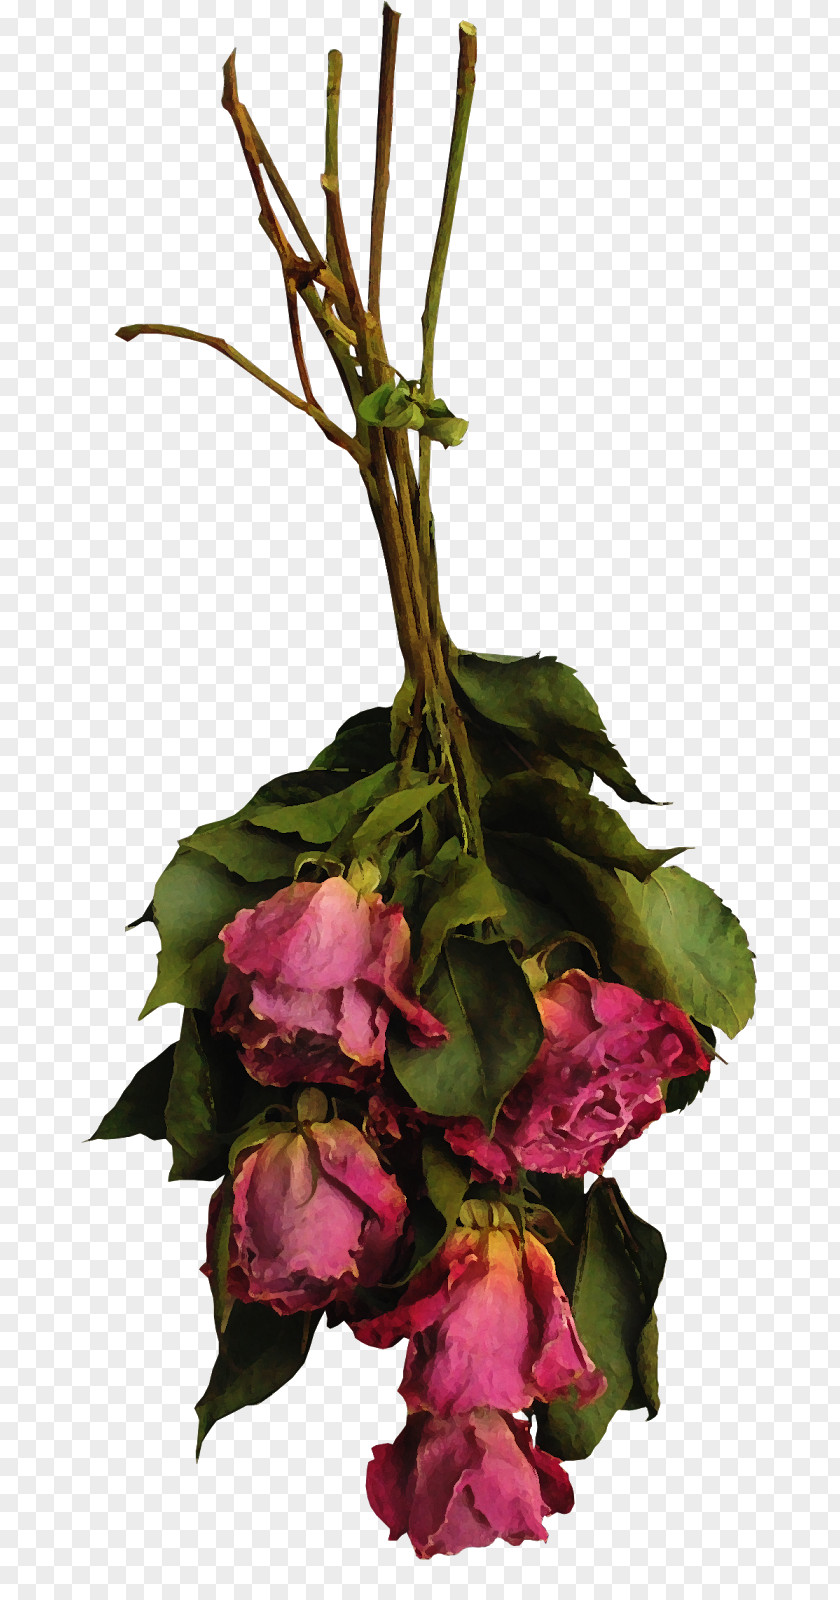 Dried Flowers Floral Design Cut Rose Flower Bouquet PNG